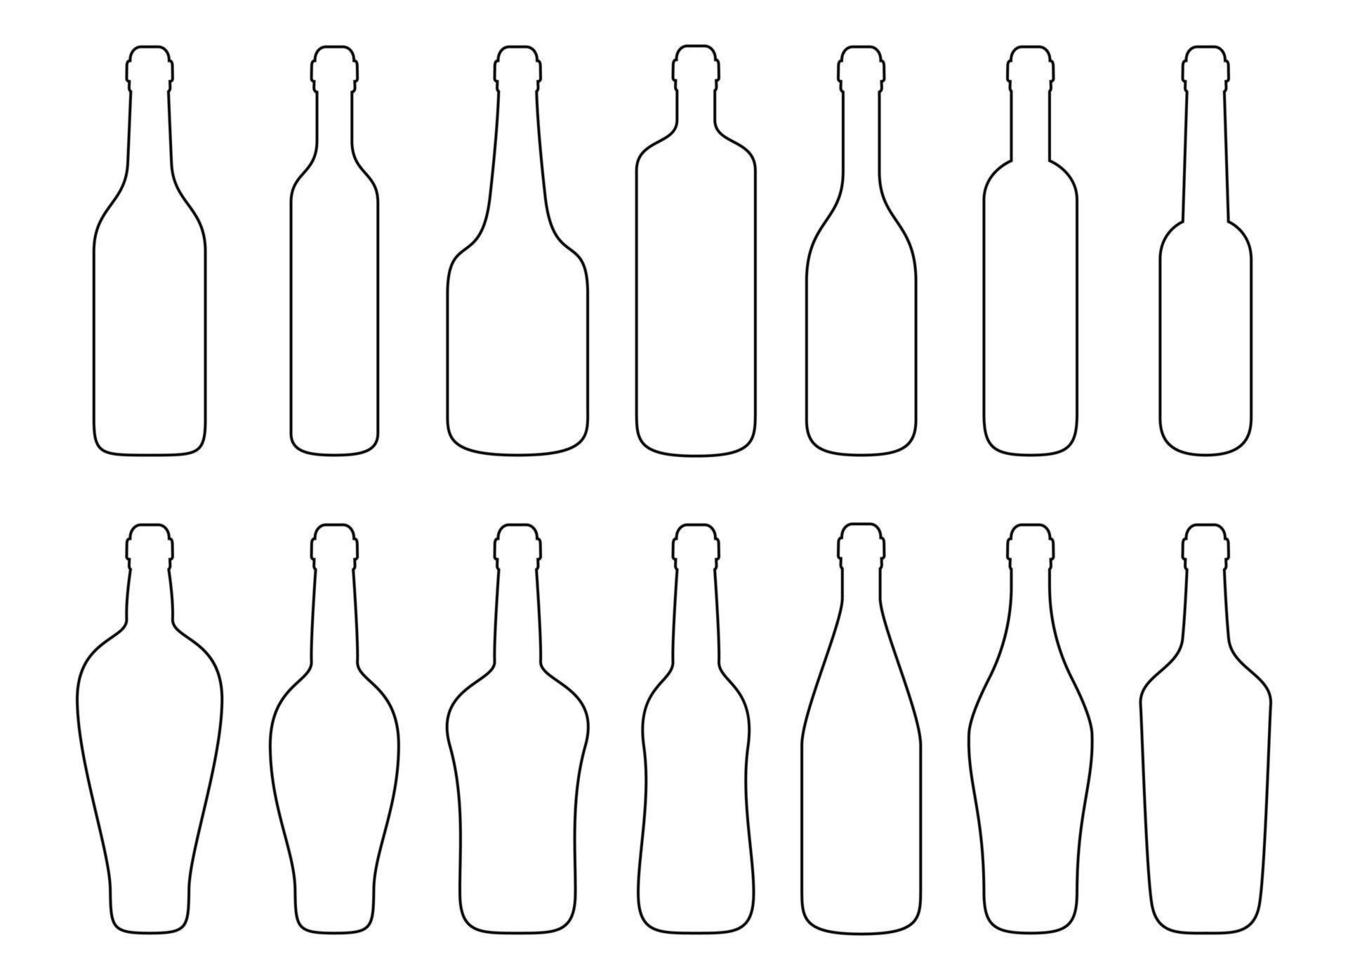 Ilustración de diseño de vector de botella de vidrio aislado sobre fondo blanco